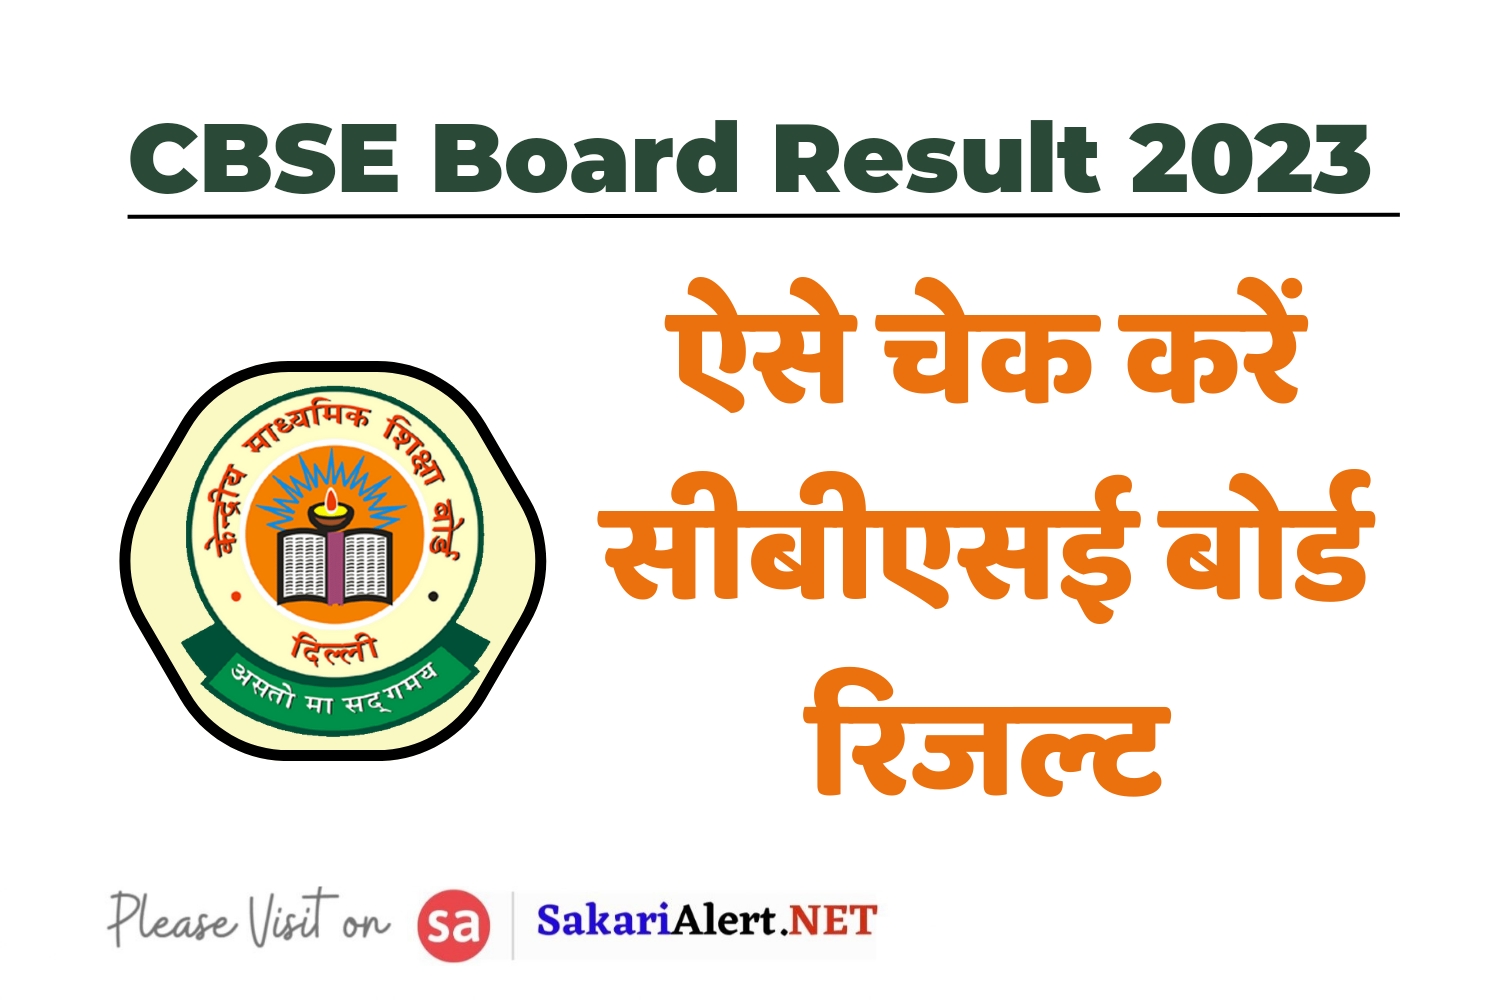 CBSE Board Class 12th Re Evaluation Result 2023 - देखें सीबीएसई बोर्ड 12वीं का रिजल्ट